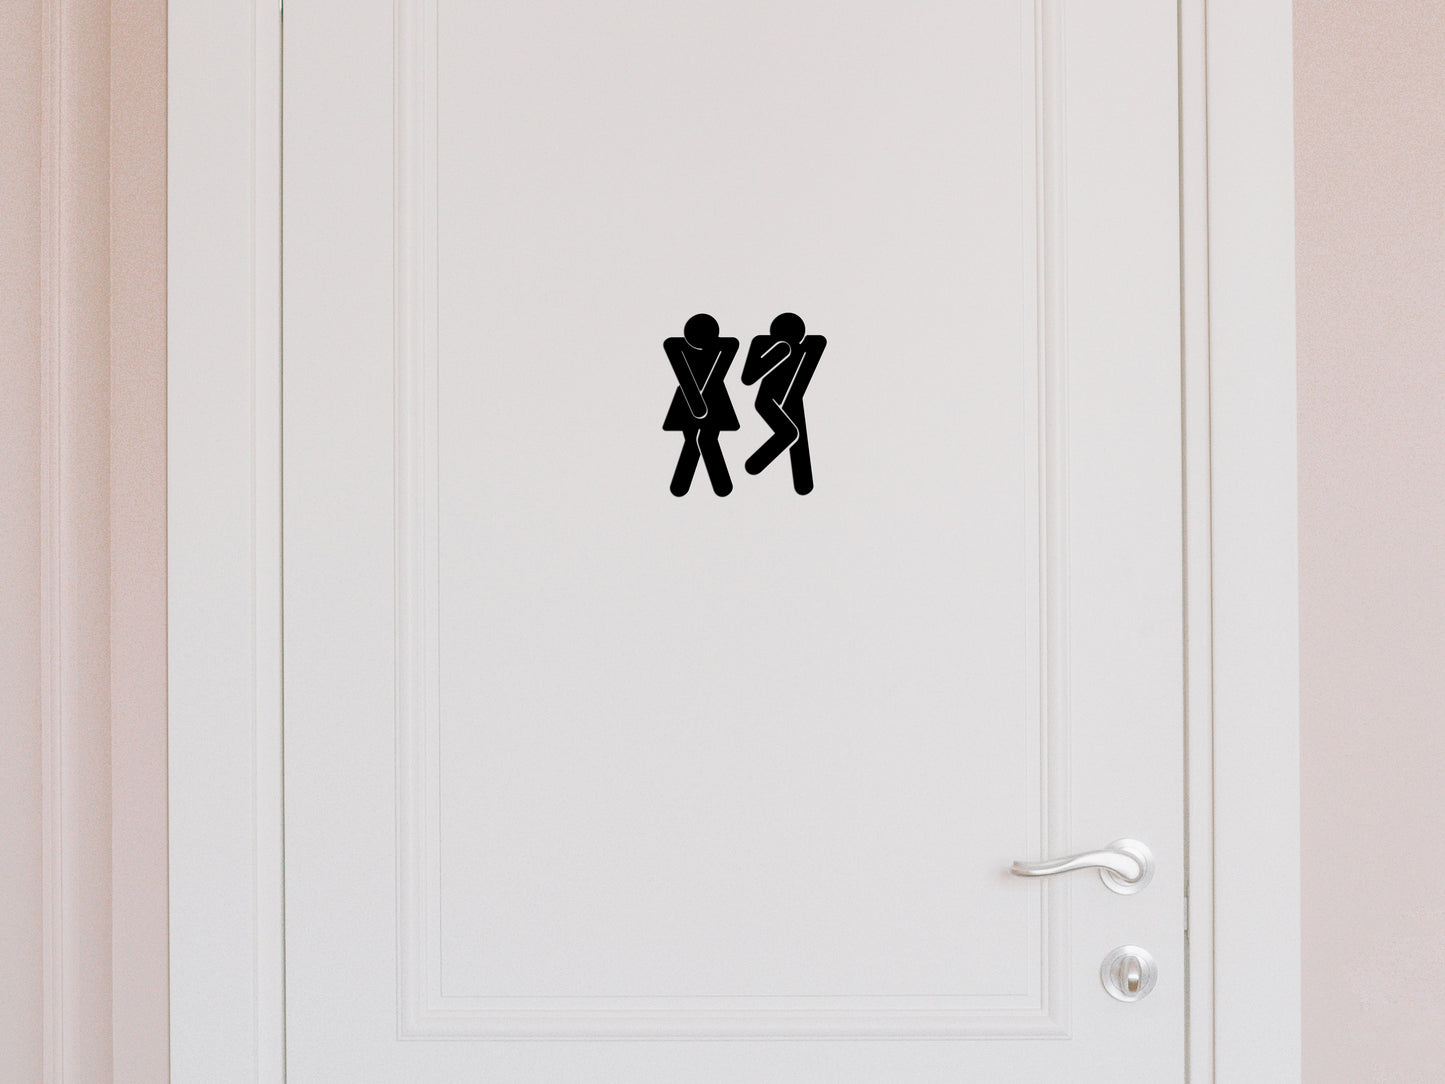 Toilet pictogram